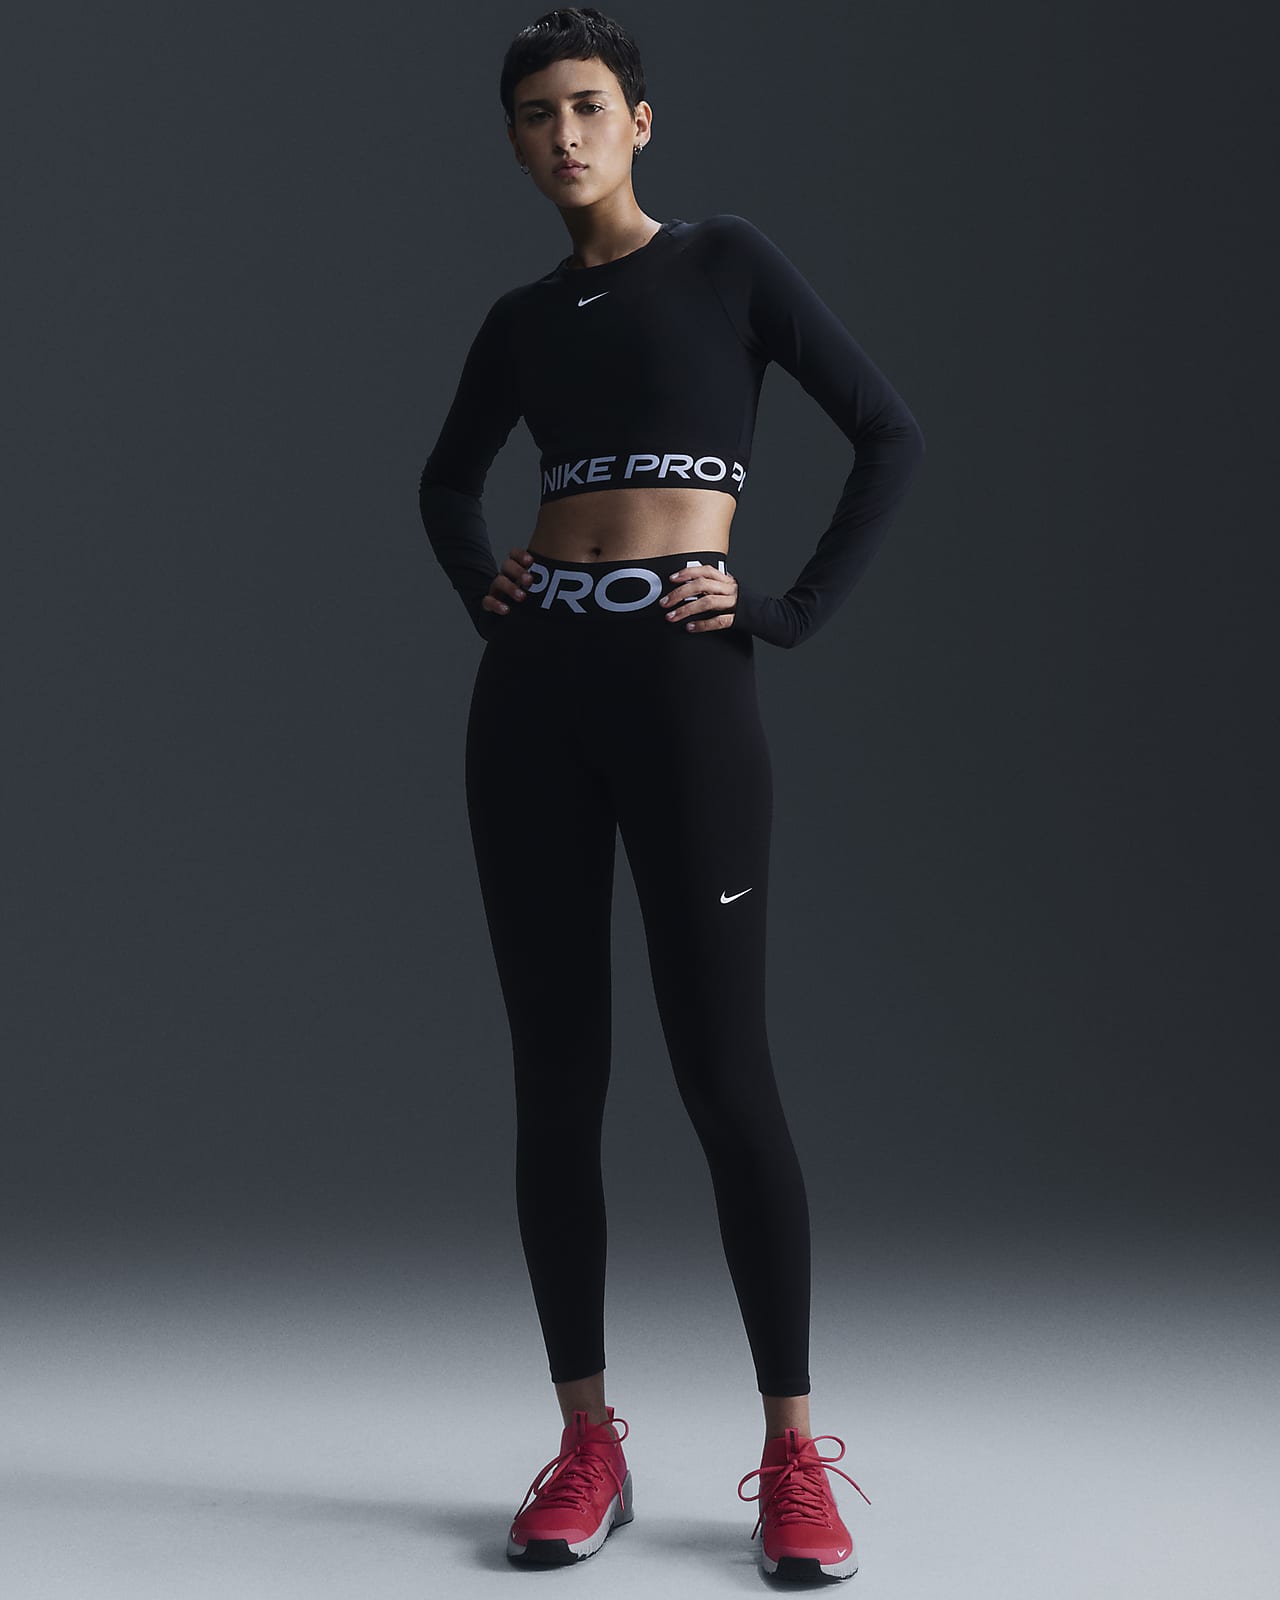 Leggings a tutta lunghezza a vita alta Nike Pro Sculpt – Donna